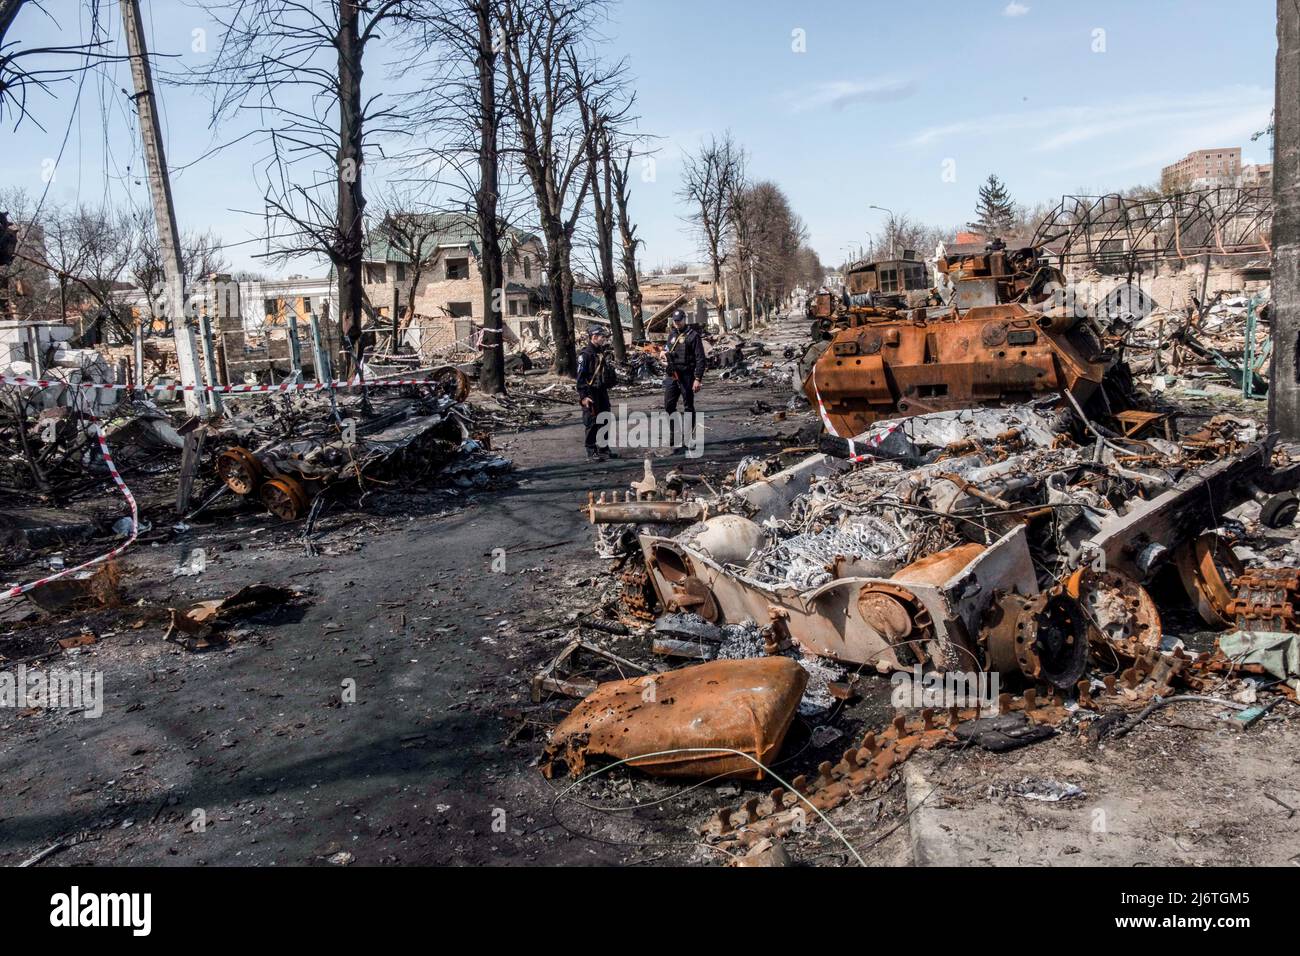 Zwei Polizisten kommen in einer Straße in Bucha an zerstörten und verbrannten Panzern vorbei. Bucha, eine Stadt am Rande der ukrainischen Hauptstadt Kiew, wurde etwa einen Monat lang von russischen Soldaten kontrolliert. Ihre Befreiung am 31. März enthüllte einige der grausamsten Gräueltaten, die russische Soldaten während der Besatzung verübt hatten. Gebäude wurden zerstört und Häuser geplündert. In Bucha Straßen, Gebäuden und Massengräbern wurden Leichen gefunden. (Foto von Rick Mave / SOPA Images/Sipa USA) Stockfoto